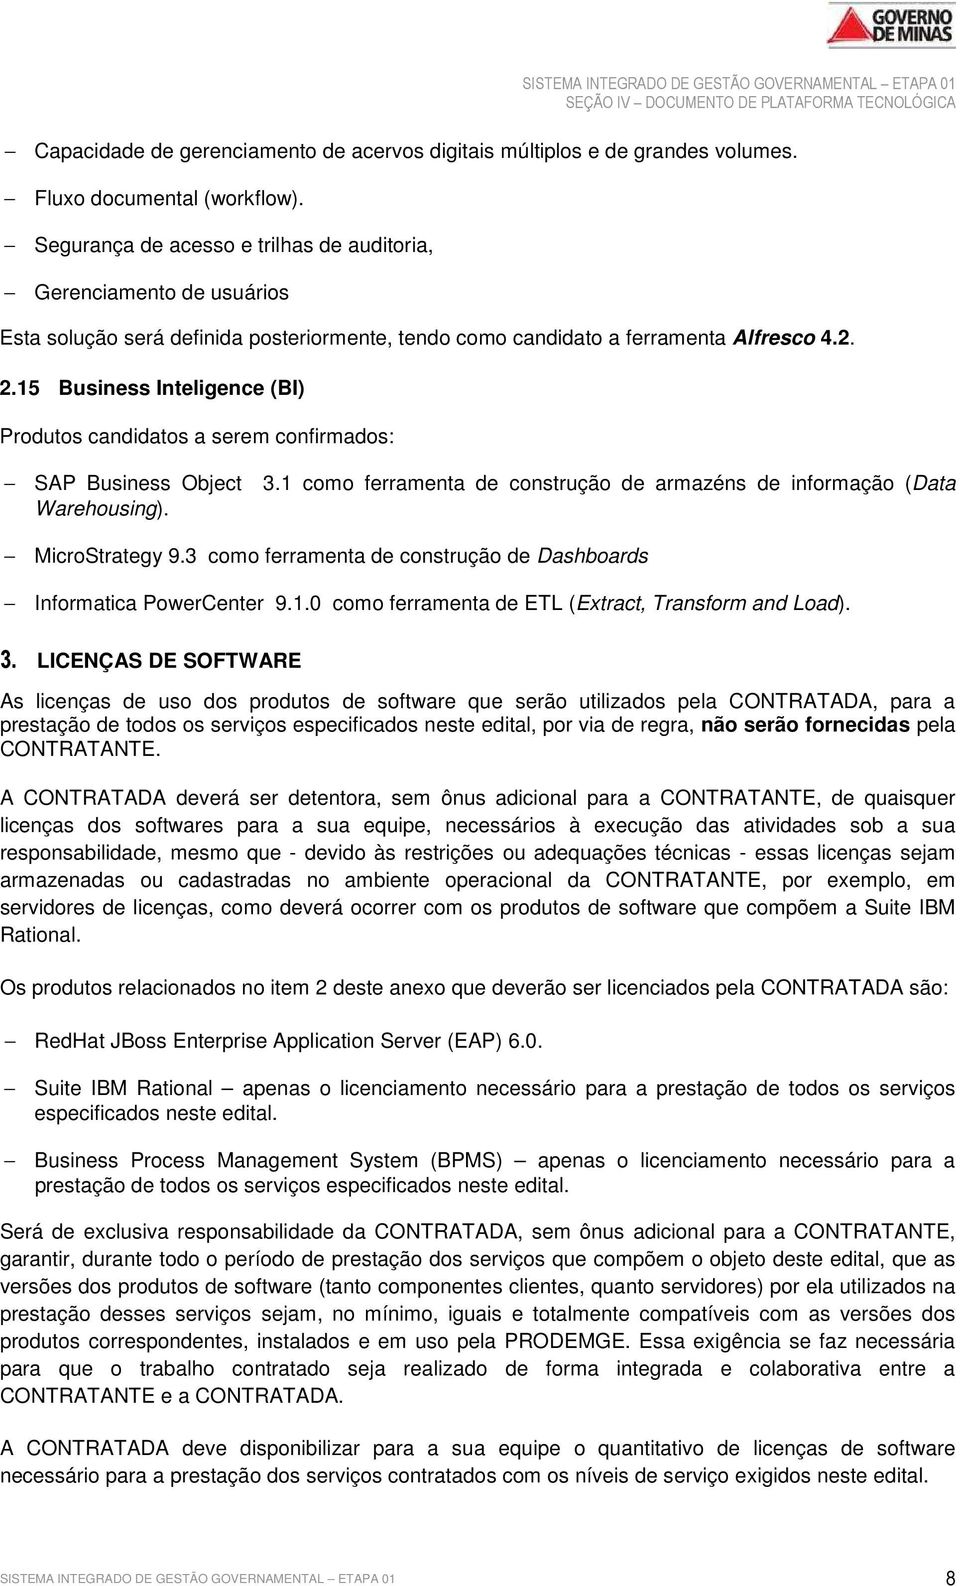 15 Business Inteligence (BI) Produtos candidatos a serem confirmados: SAP Business Object Warehousing). 3.1 como ferramenta de construção de armazéns de informação (Data MicroStrategy 9.